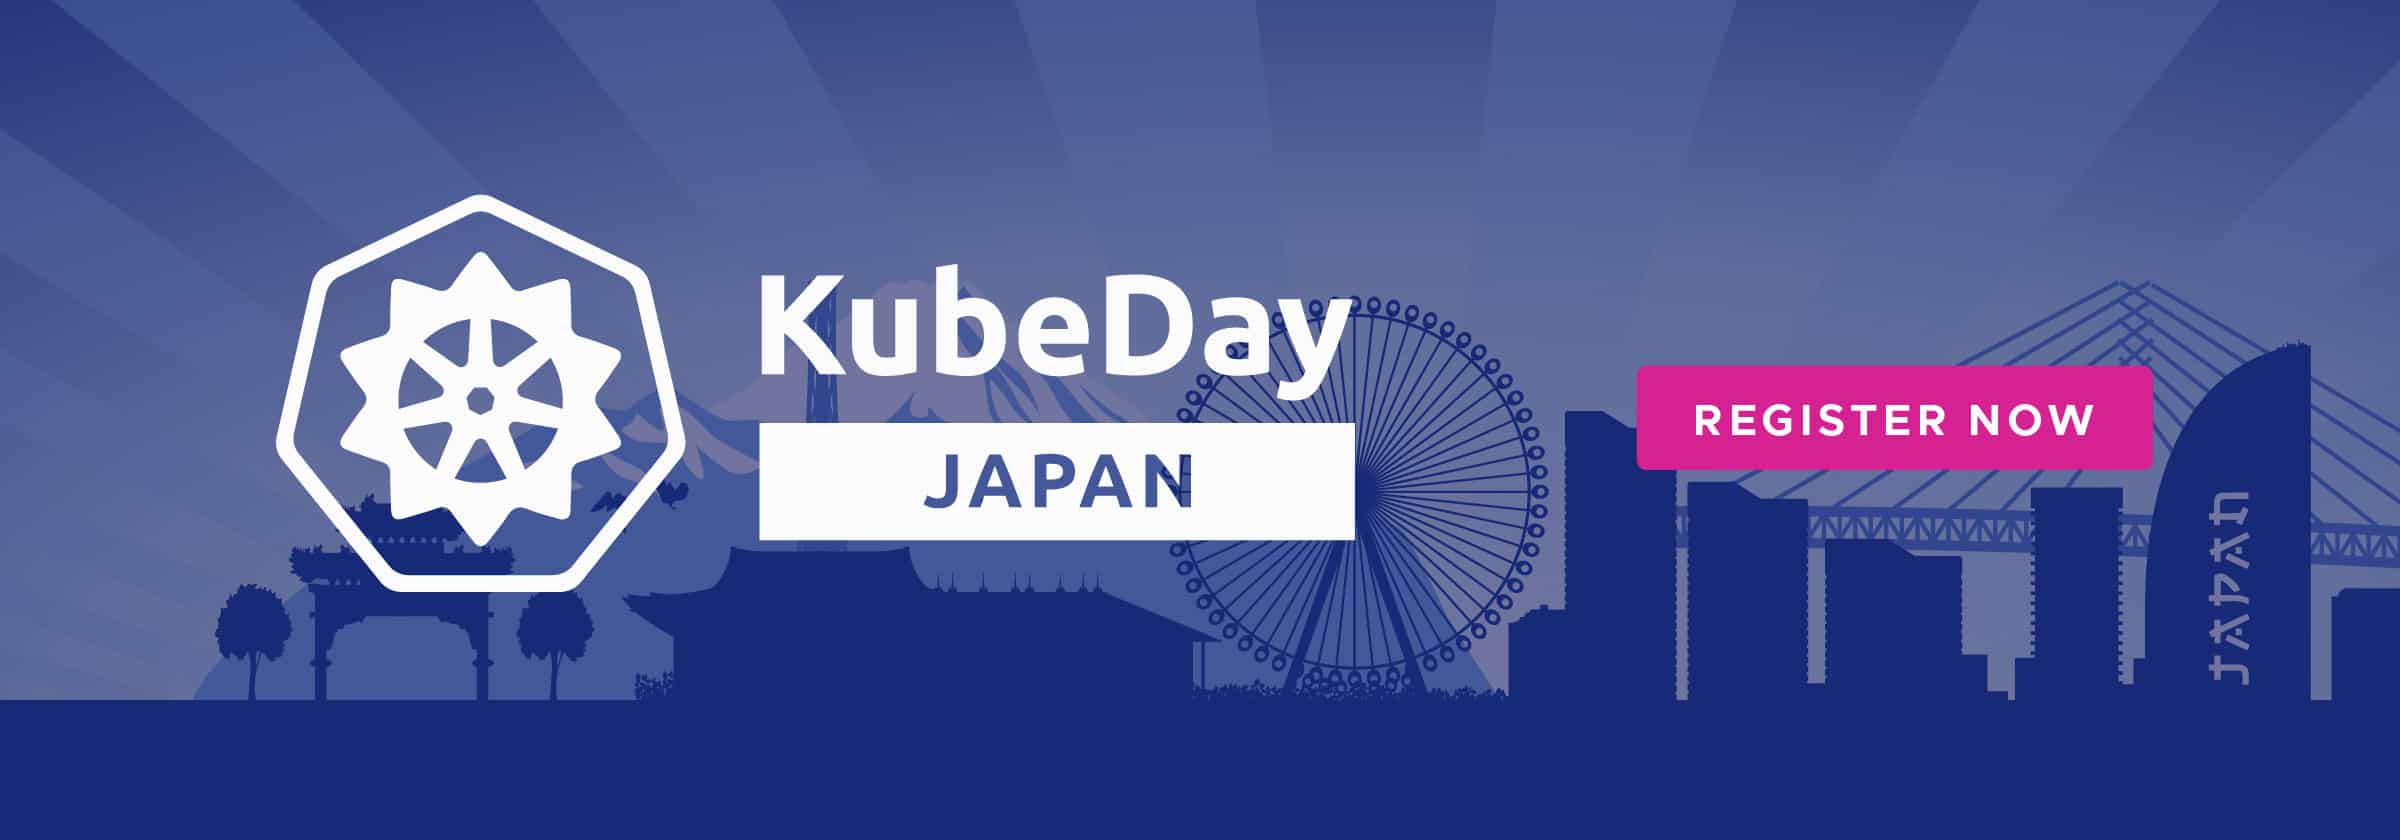 KubeDay Japan